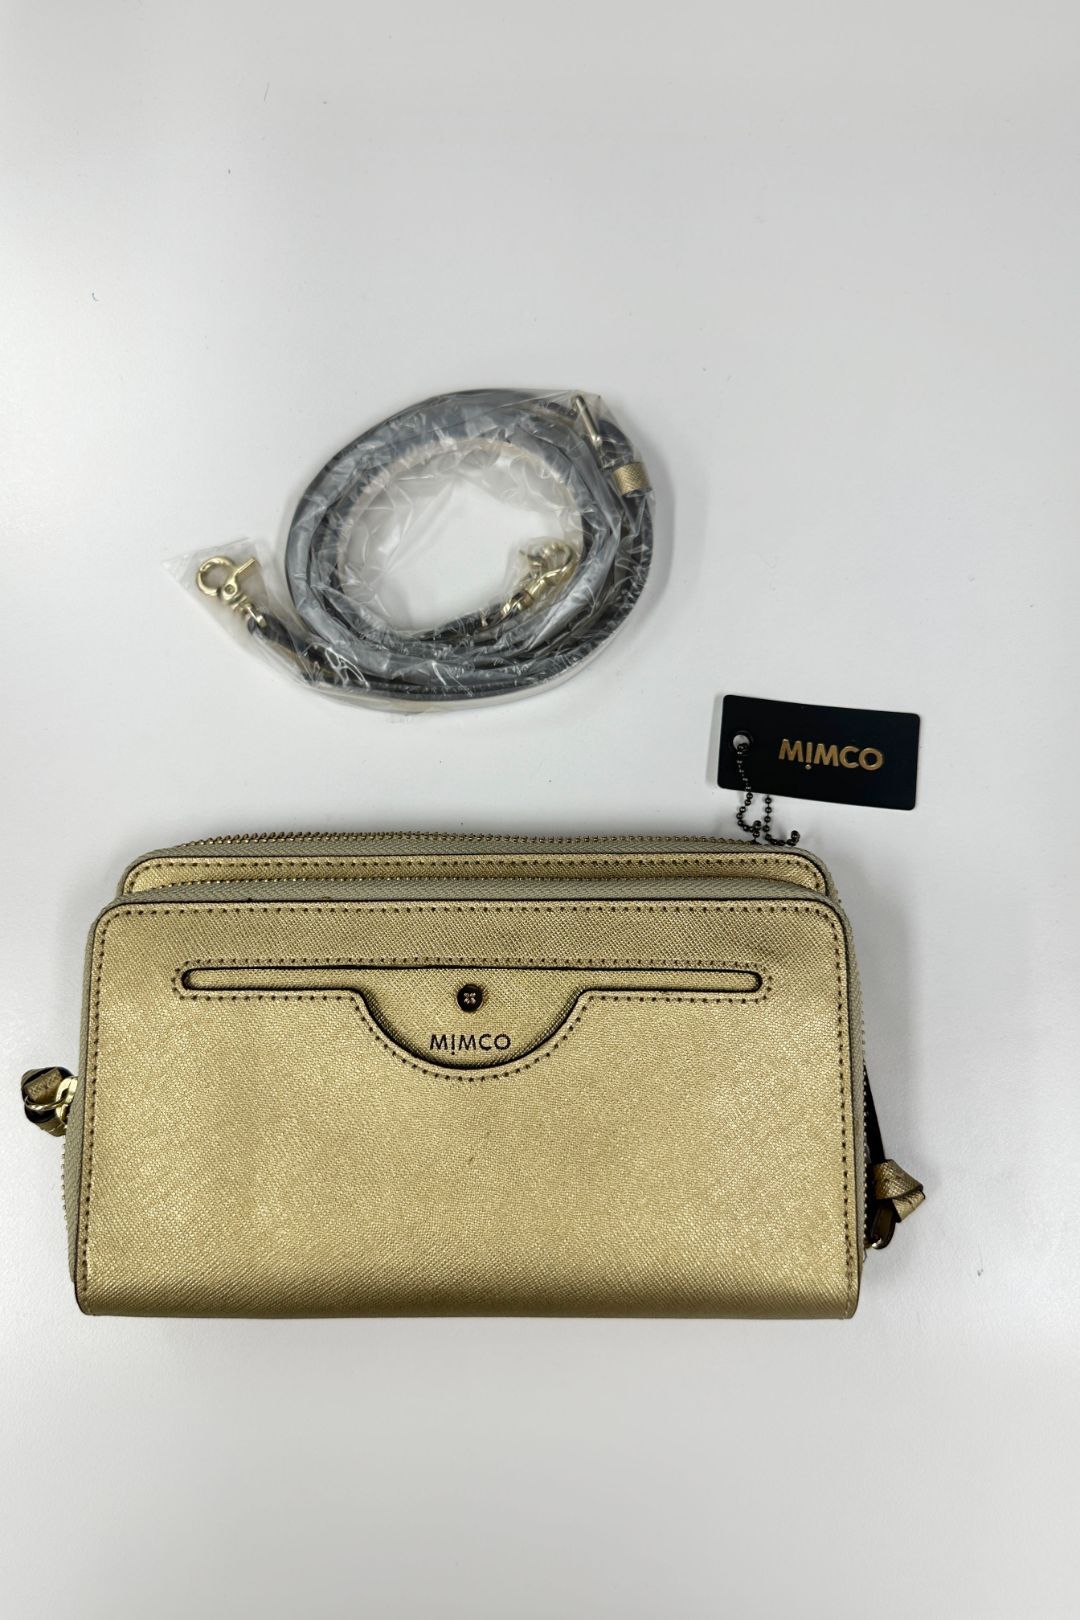 Mimco Gold Phenomena XL Wallet